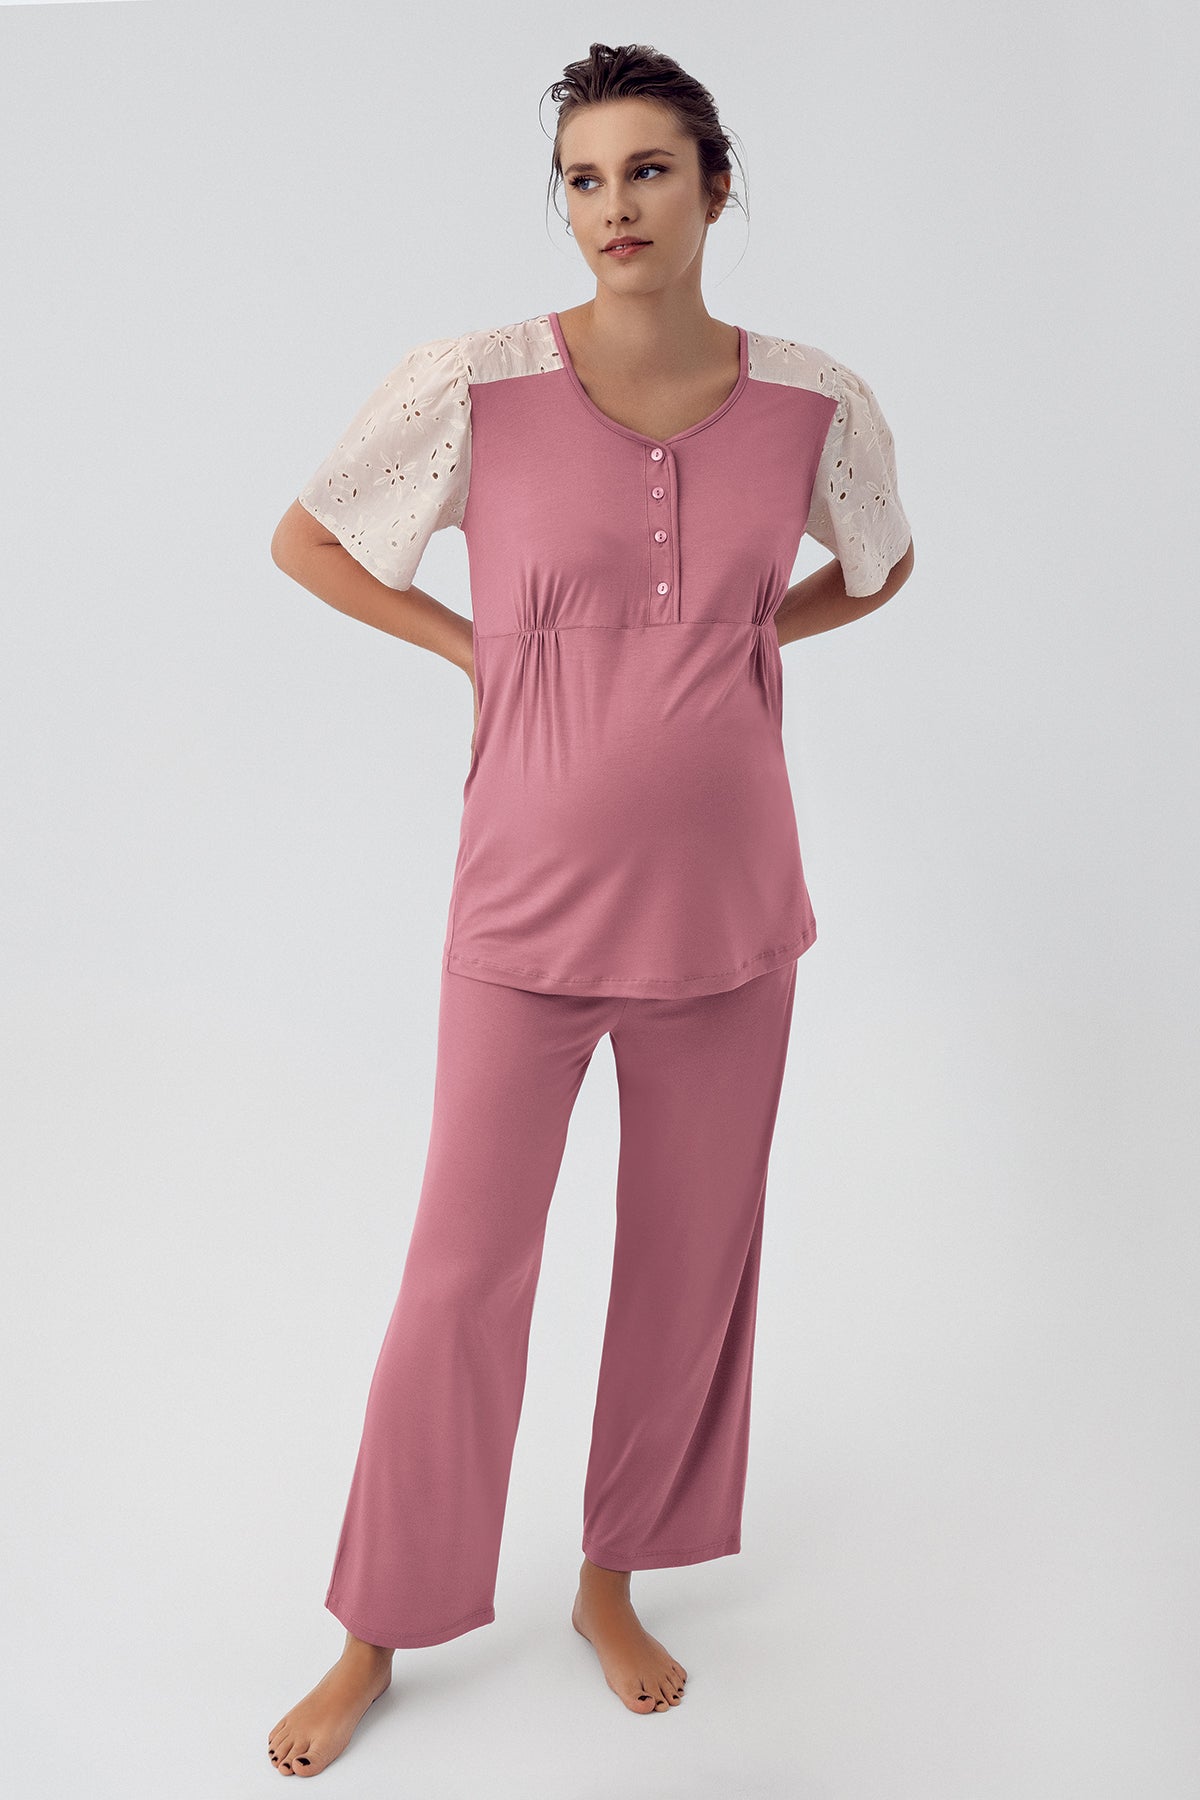 Lace Sleeve Maternity & Nursing Pajamas Dried Rose - 16206